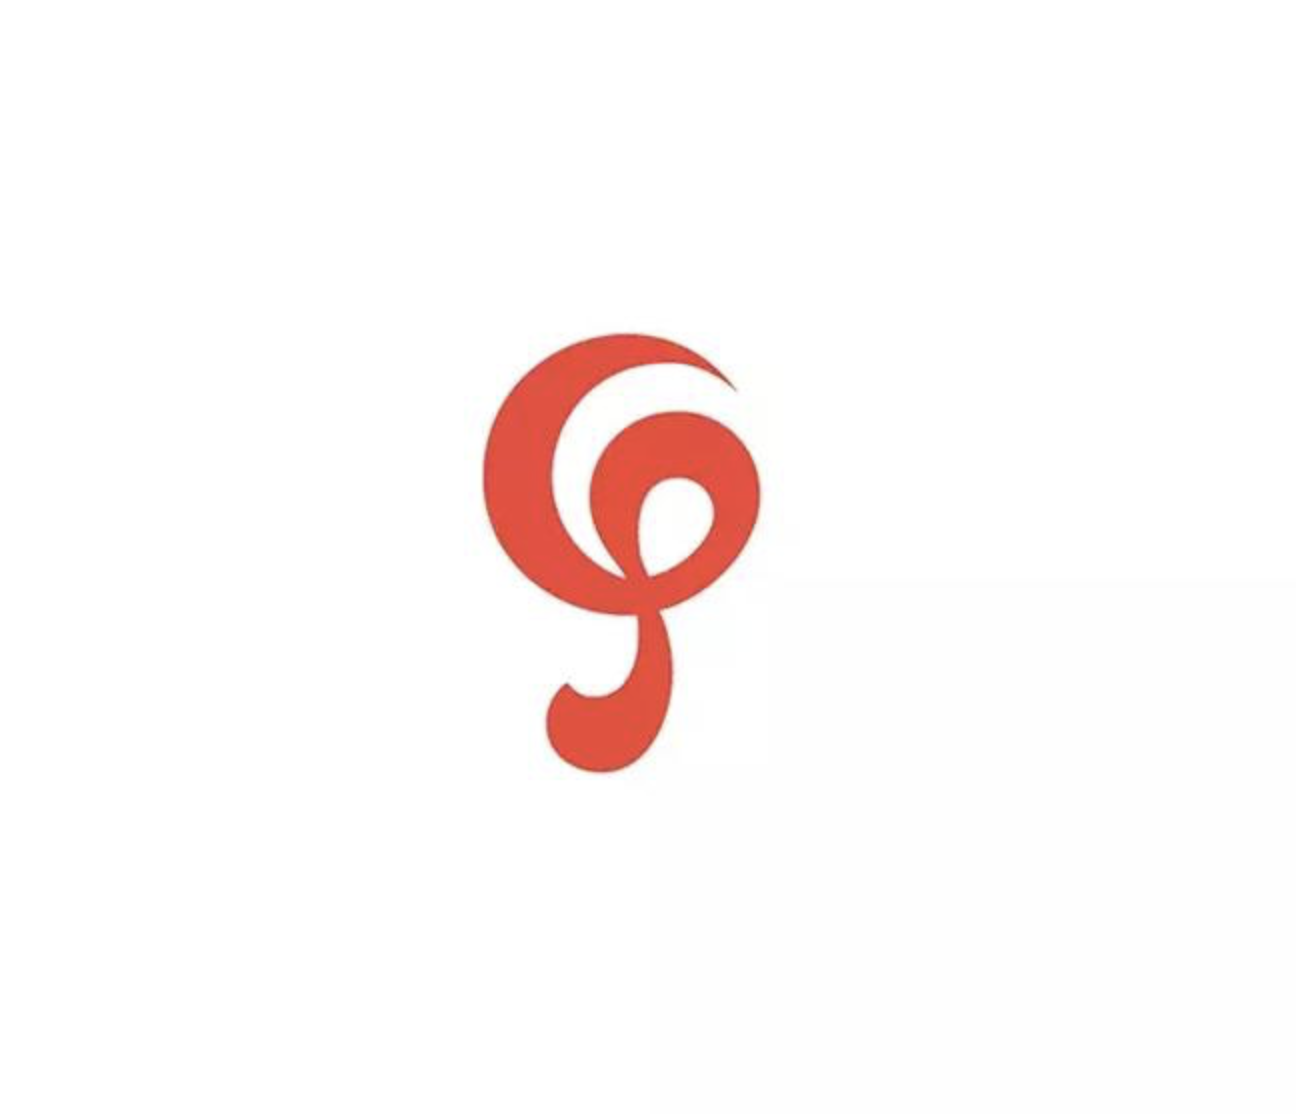 不同风格企业logo设计创意